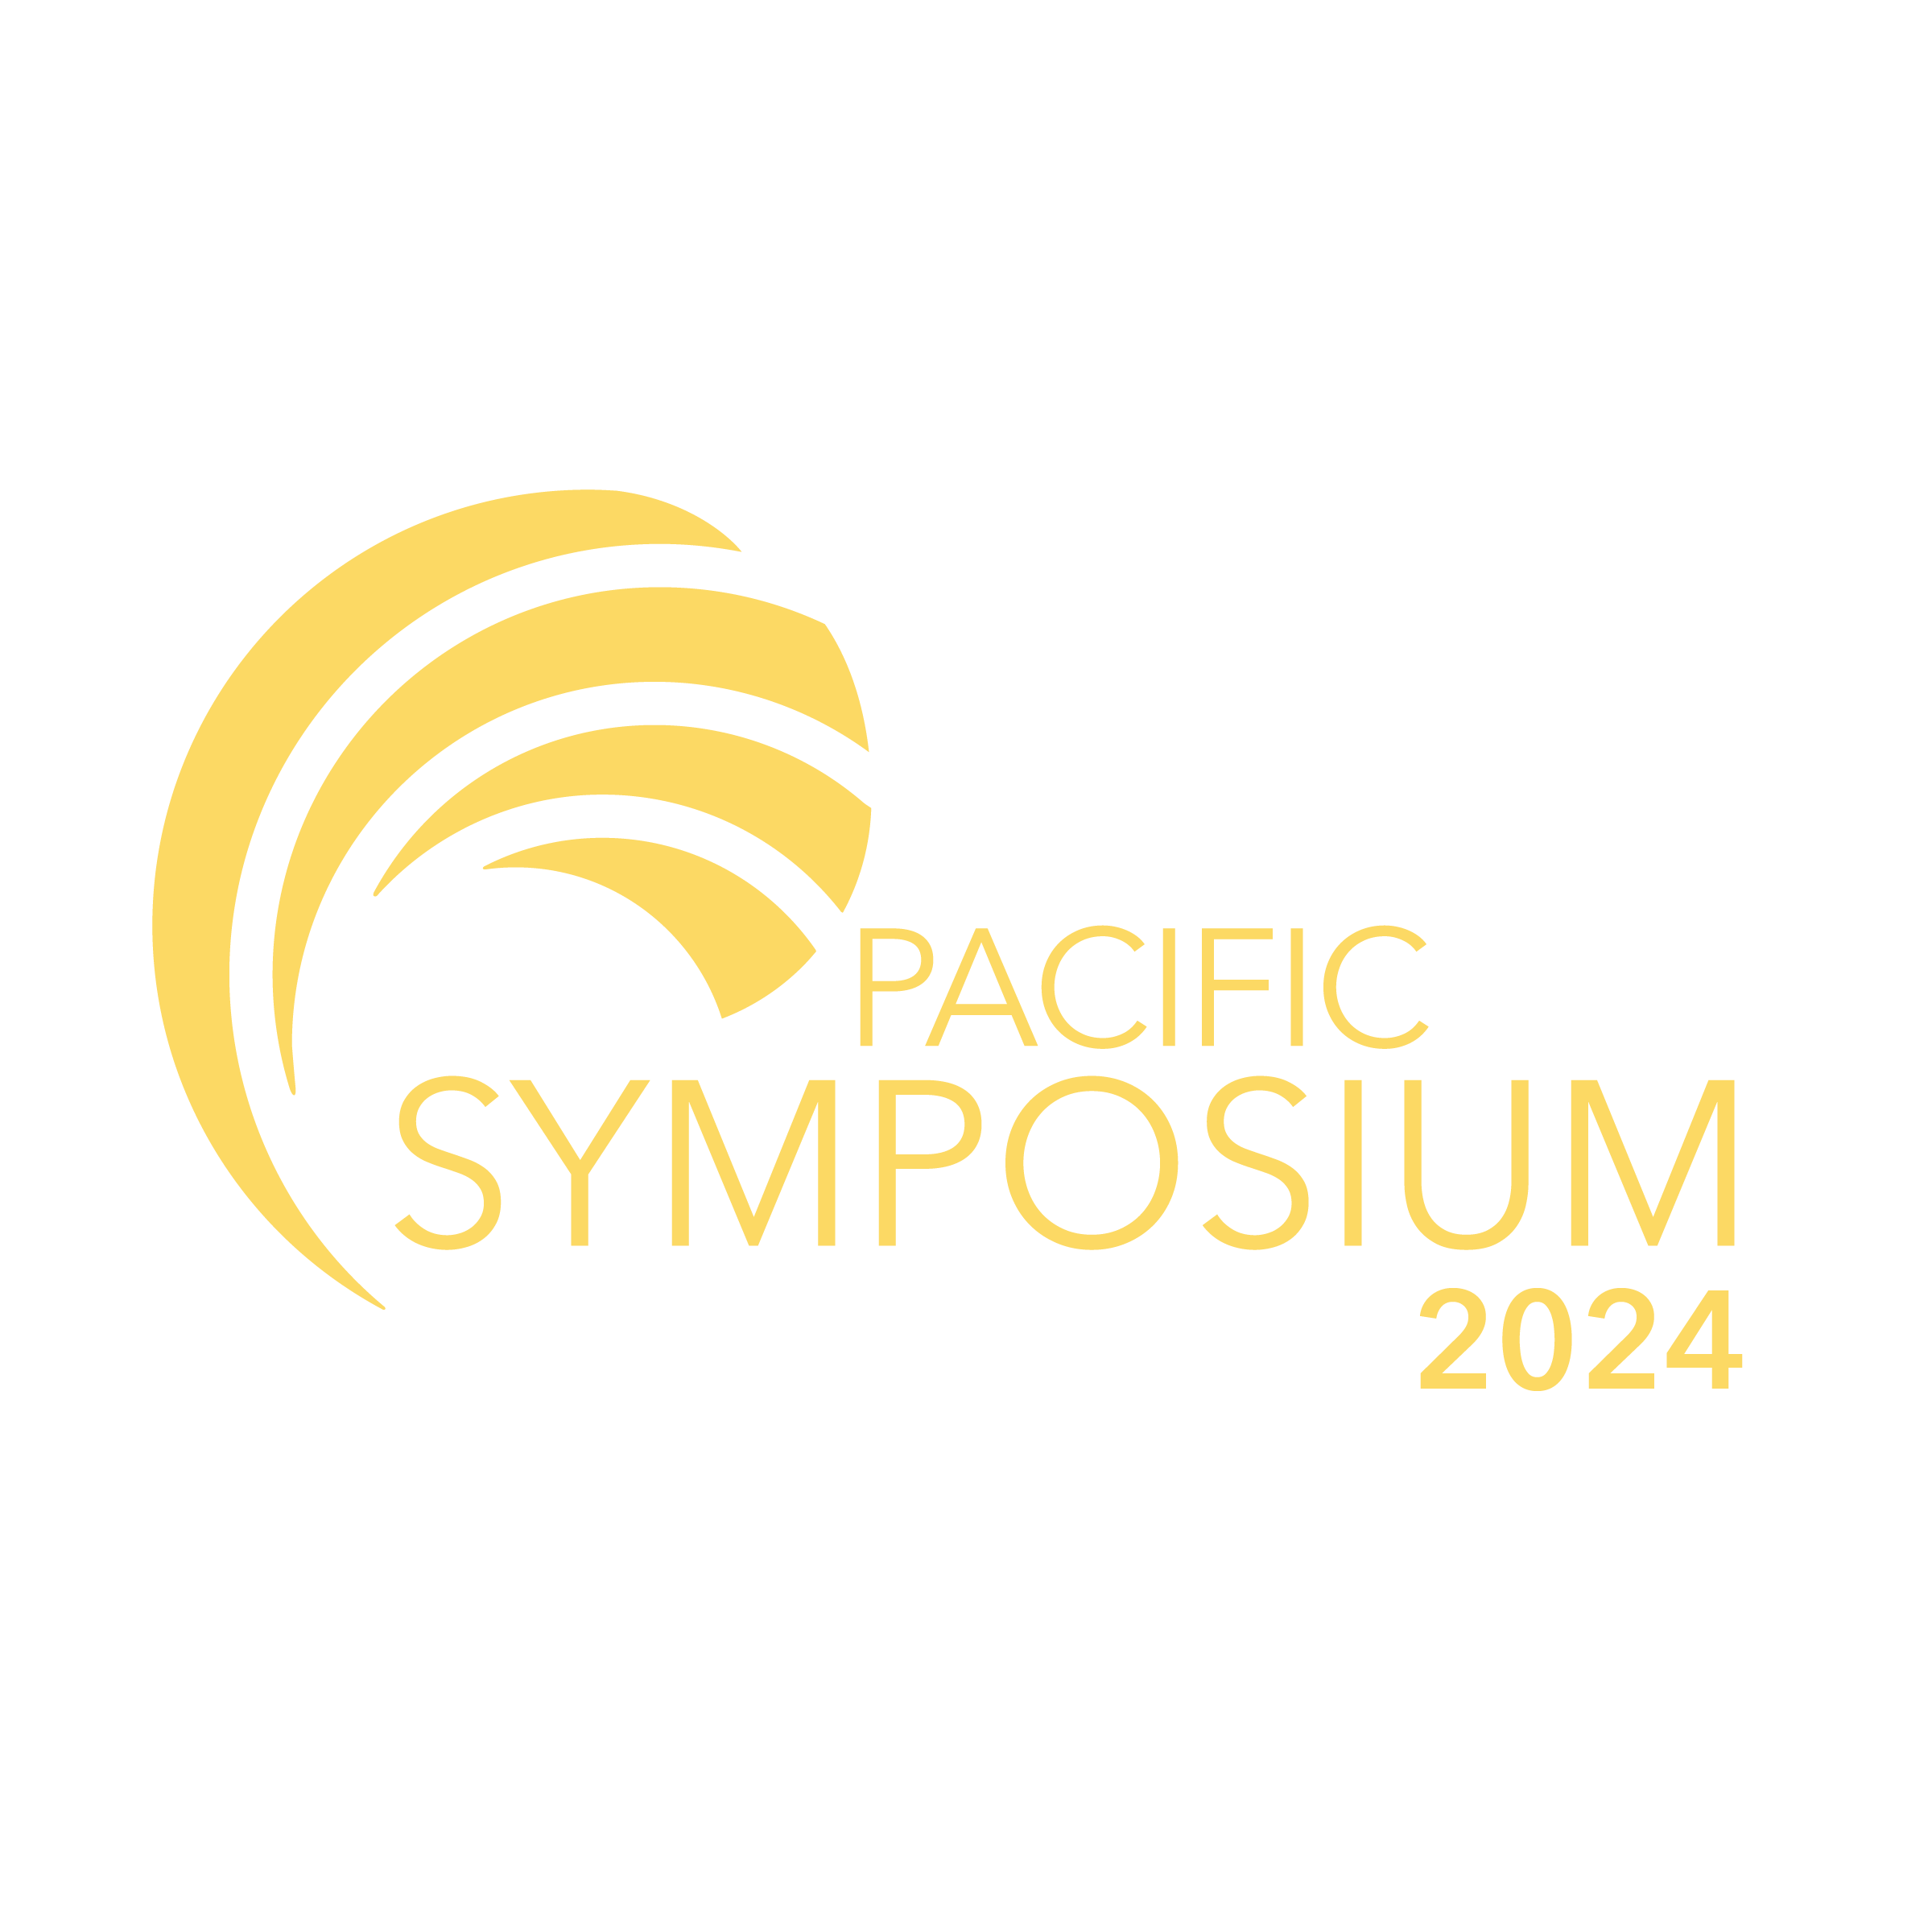 Pacific Symposium 2024 logo